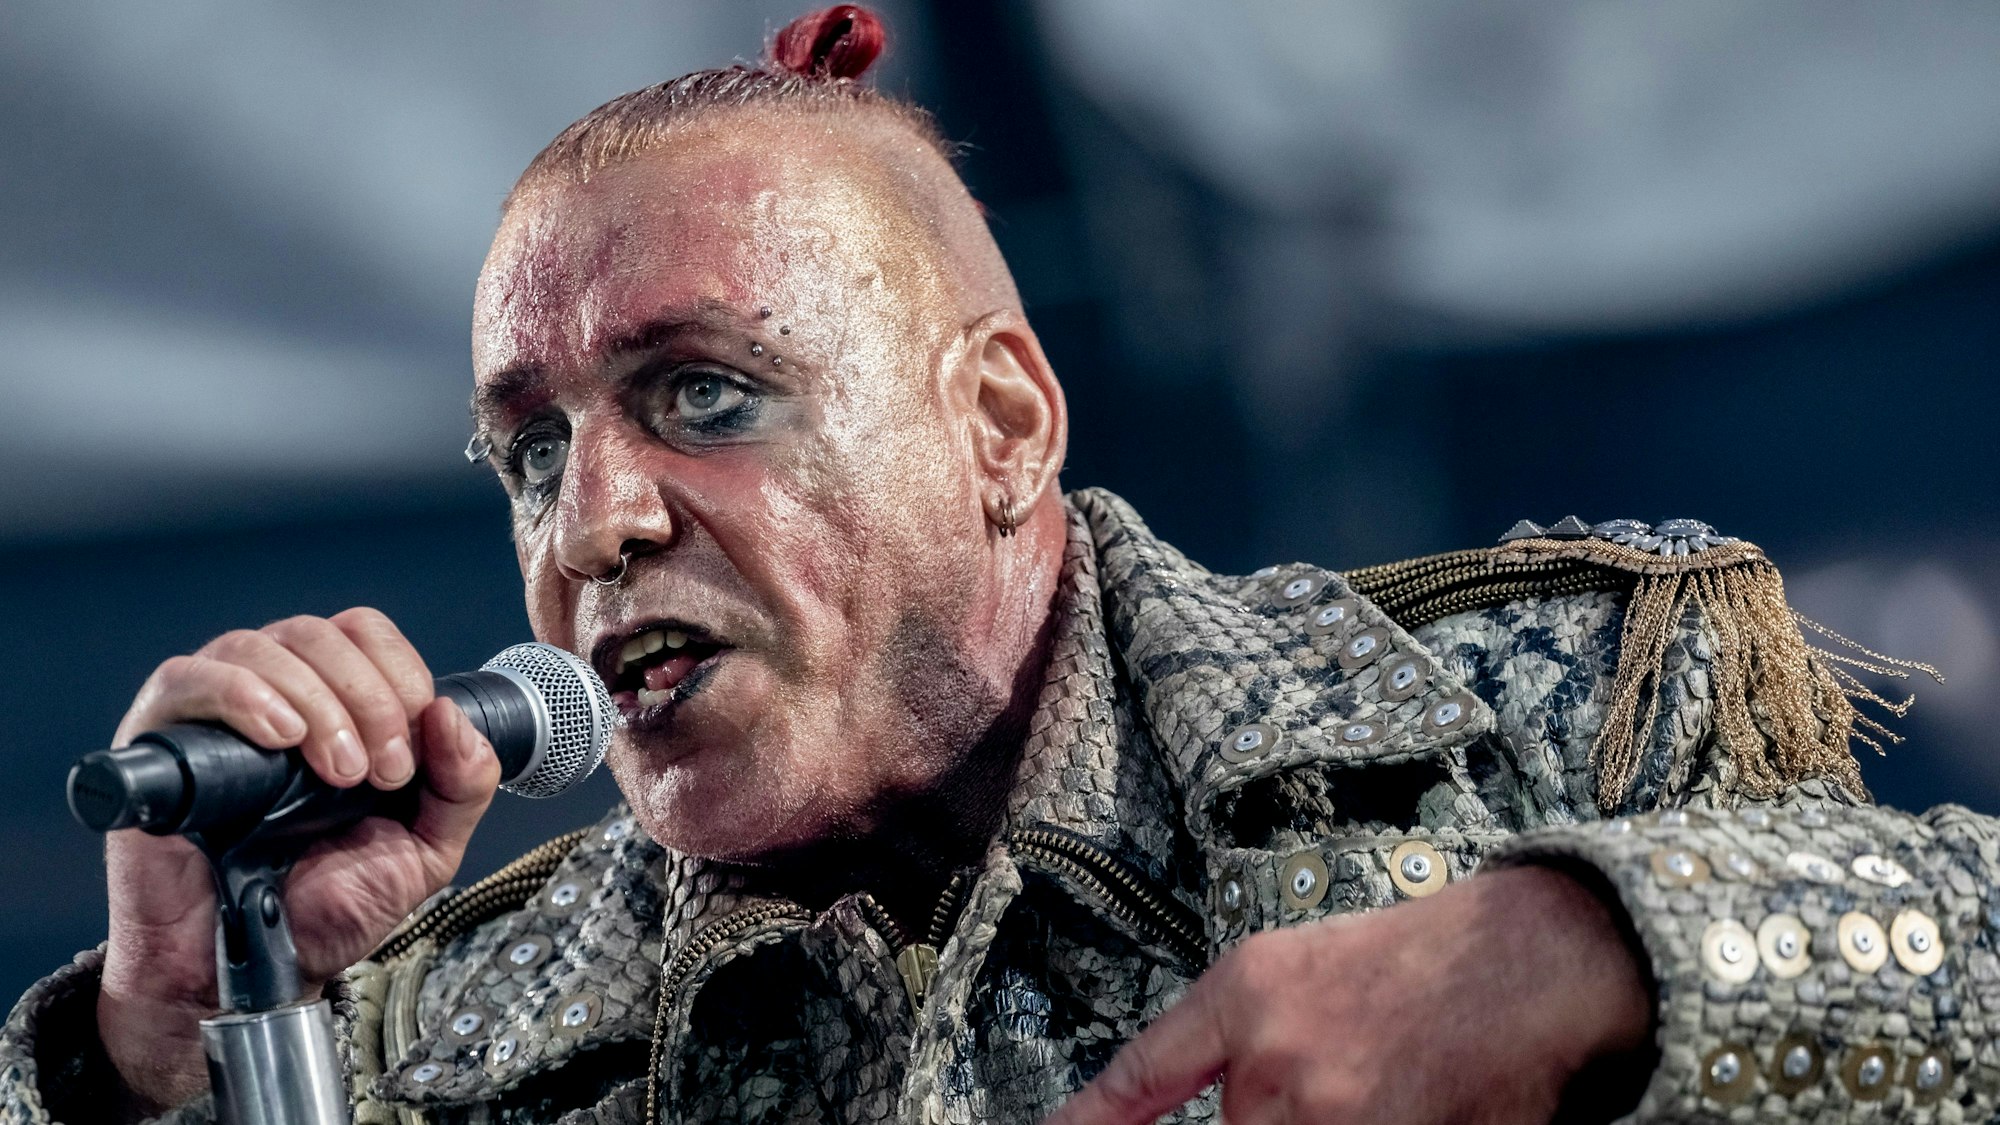 Till Lindemann, Frontsänger von Rammstein, tritt beim Konzert der Band Rammstein im Olympiastadion auf.